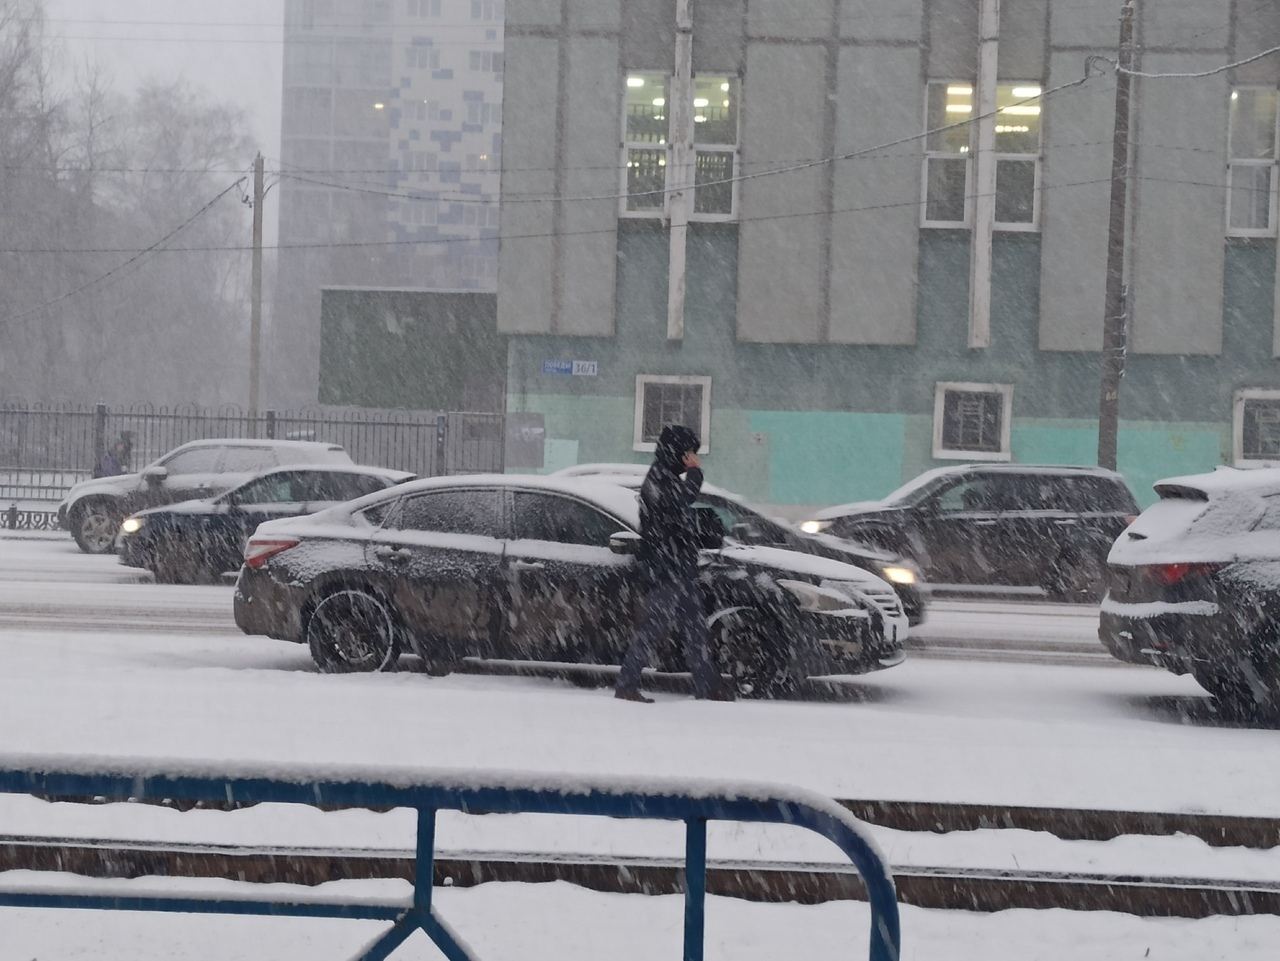 Ярославль ждёт снежное ненастье: когда погода окончательно испортится